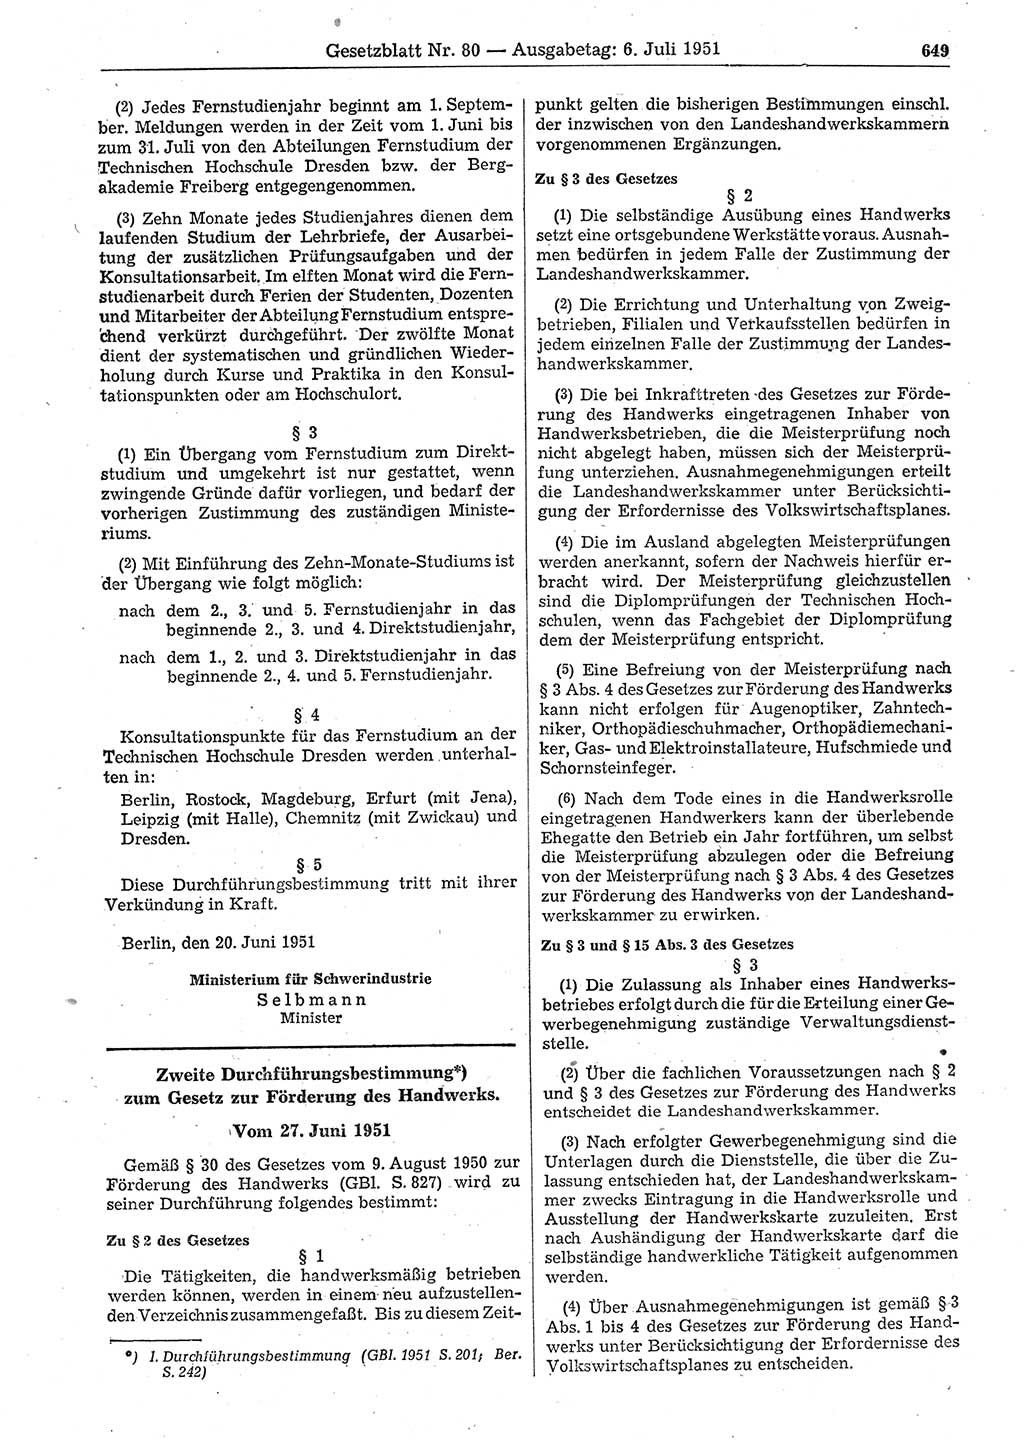 Gesetzblatt (GBl.) der Deutschen Demokratischen Republik (DDR) 1951, Seite 649 (GBl. DDR 1951, S. 649)